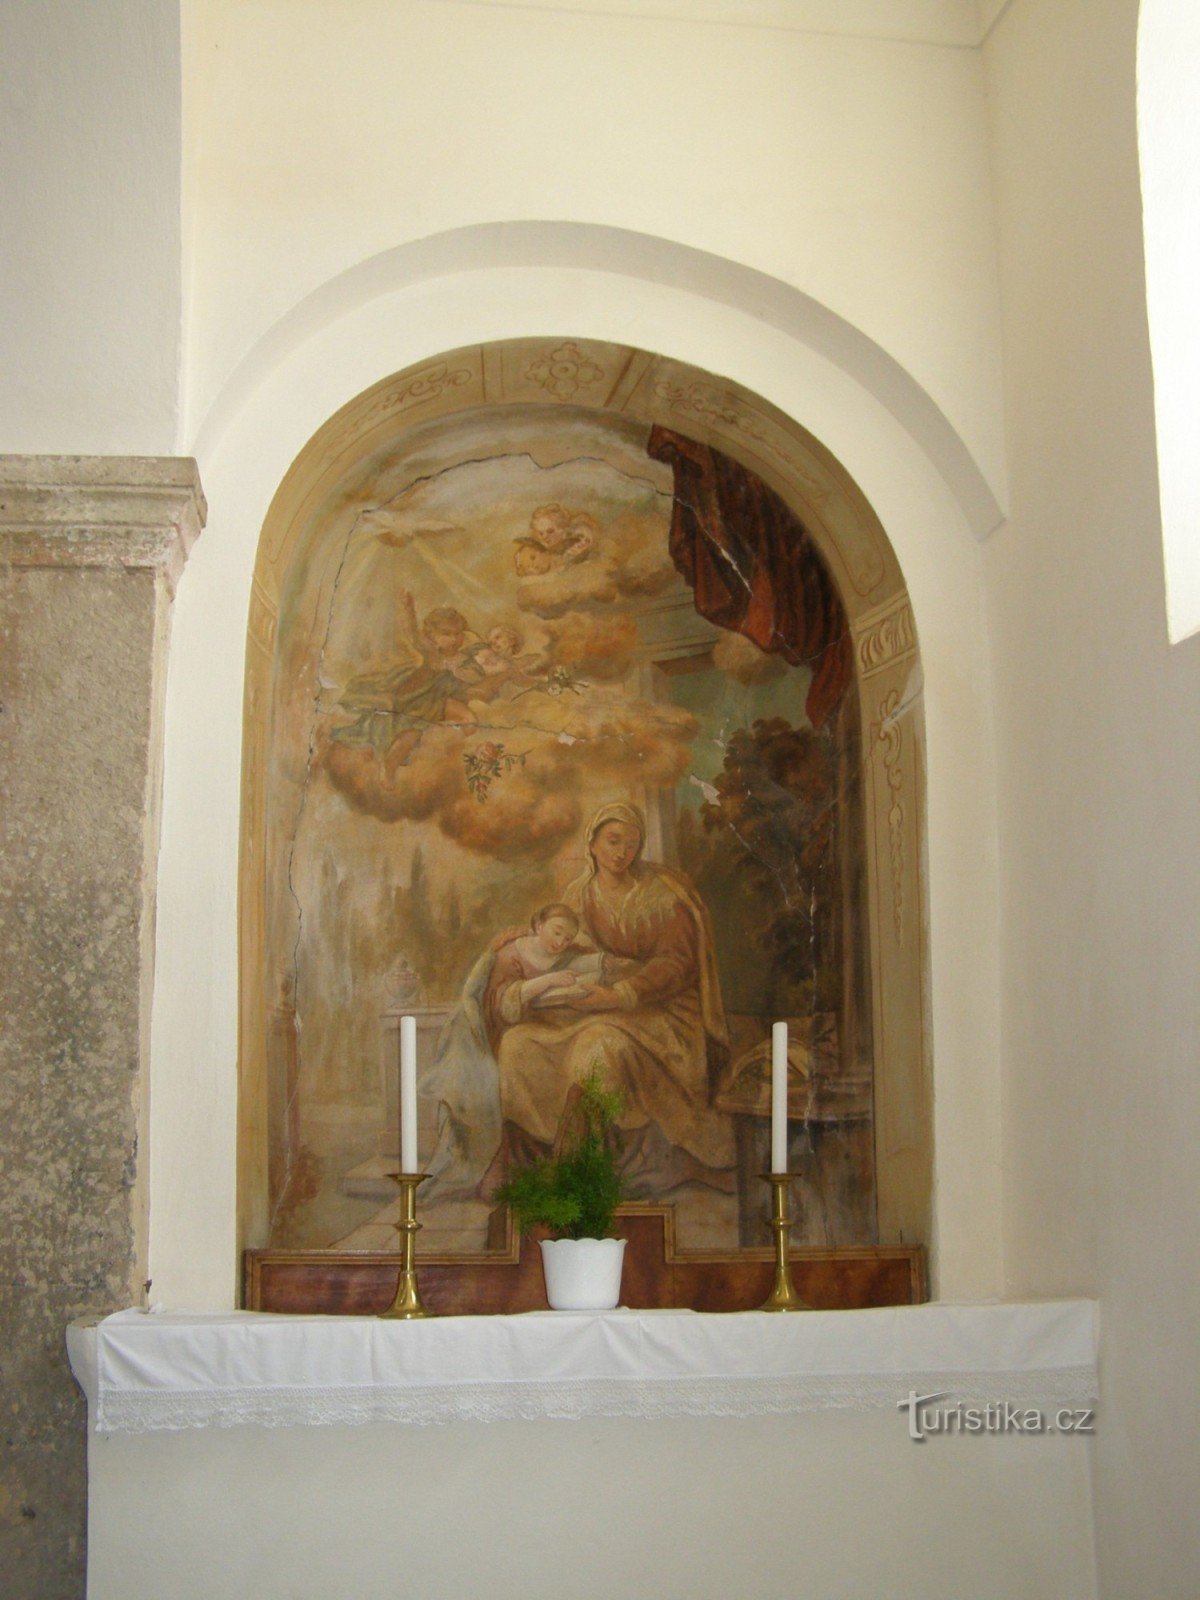 apsyda południowa św. Anna z książką na kolanach, a w niej P. Maria